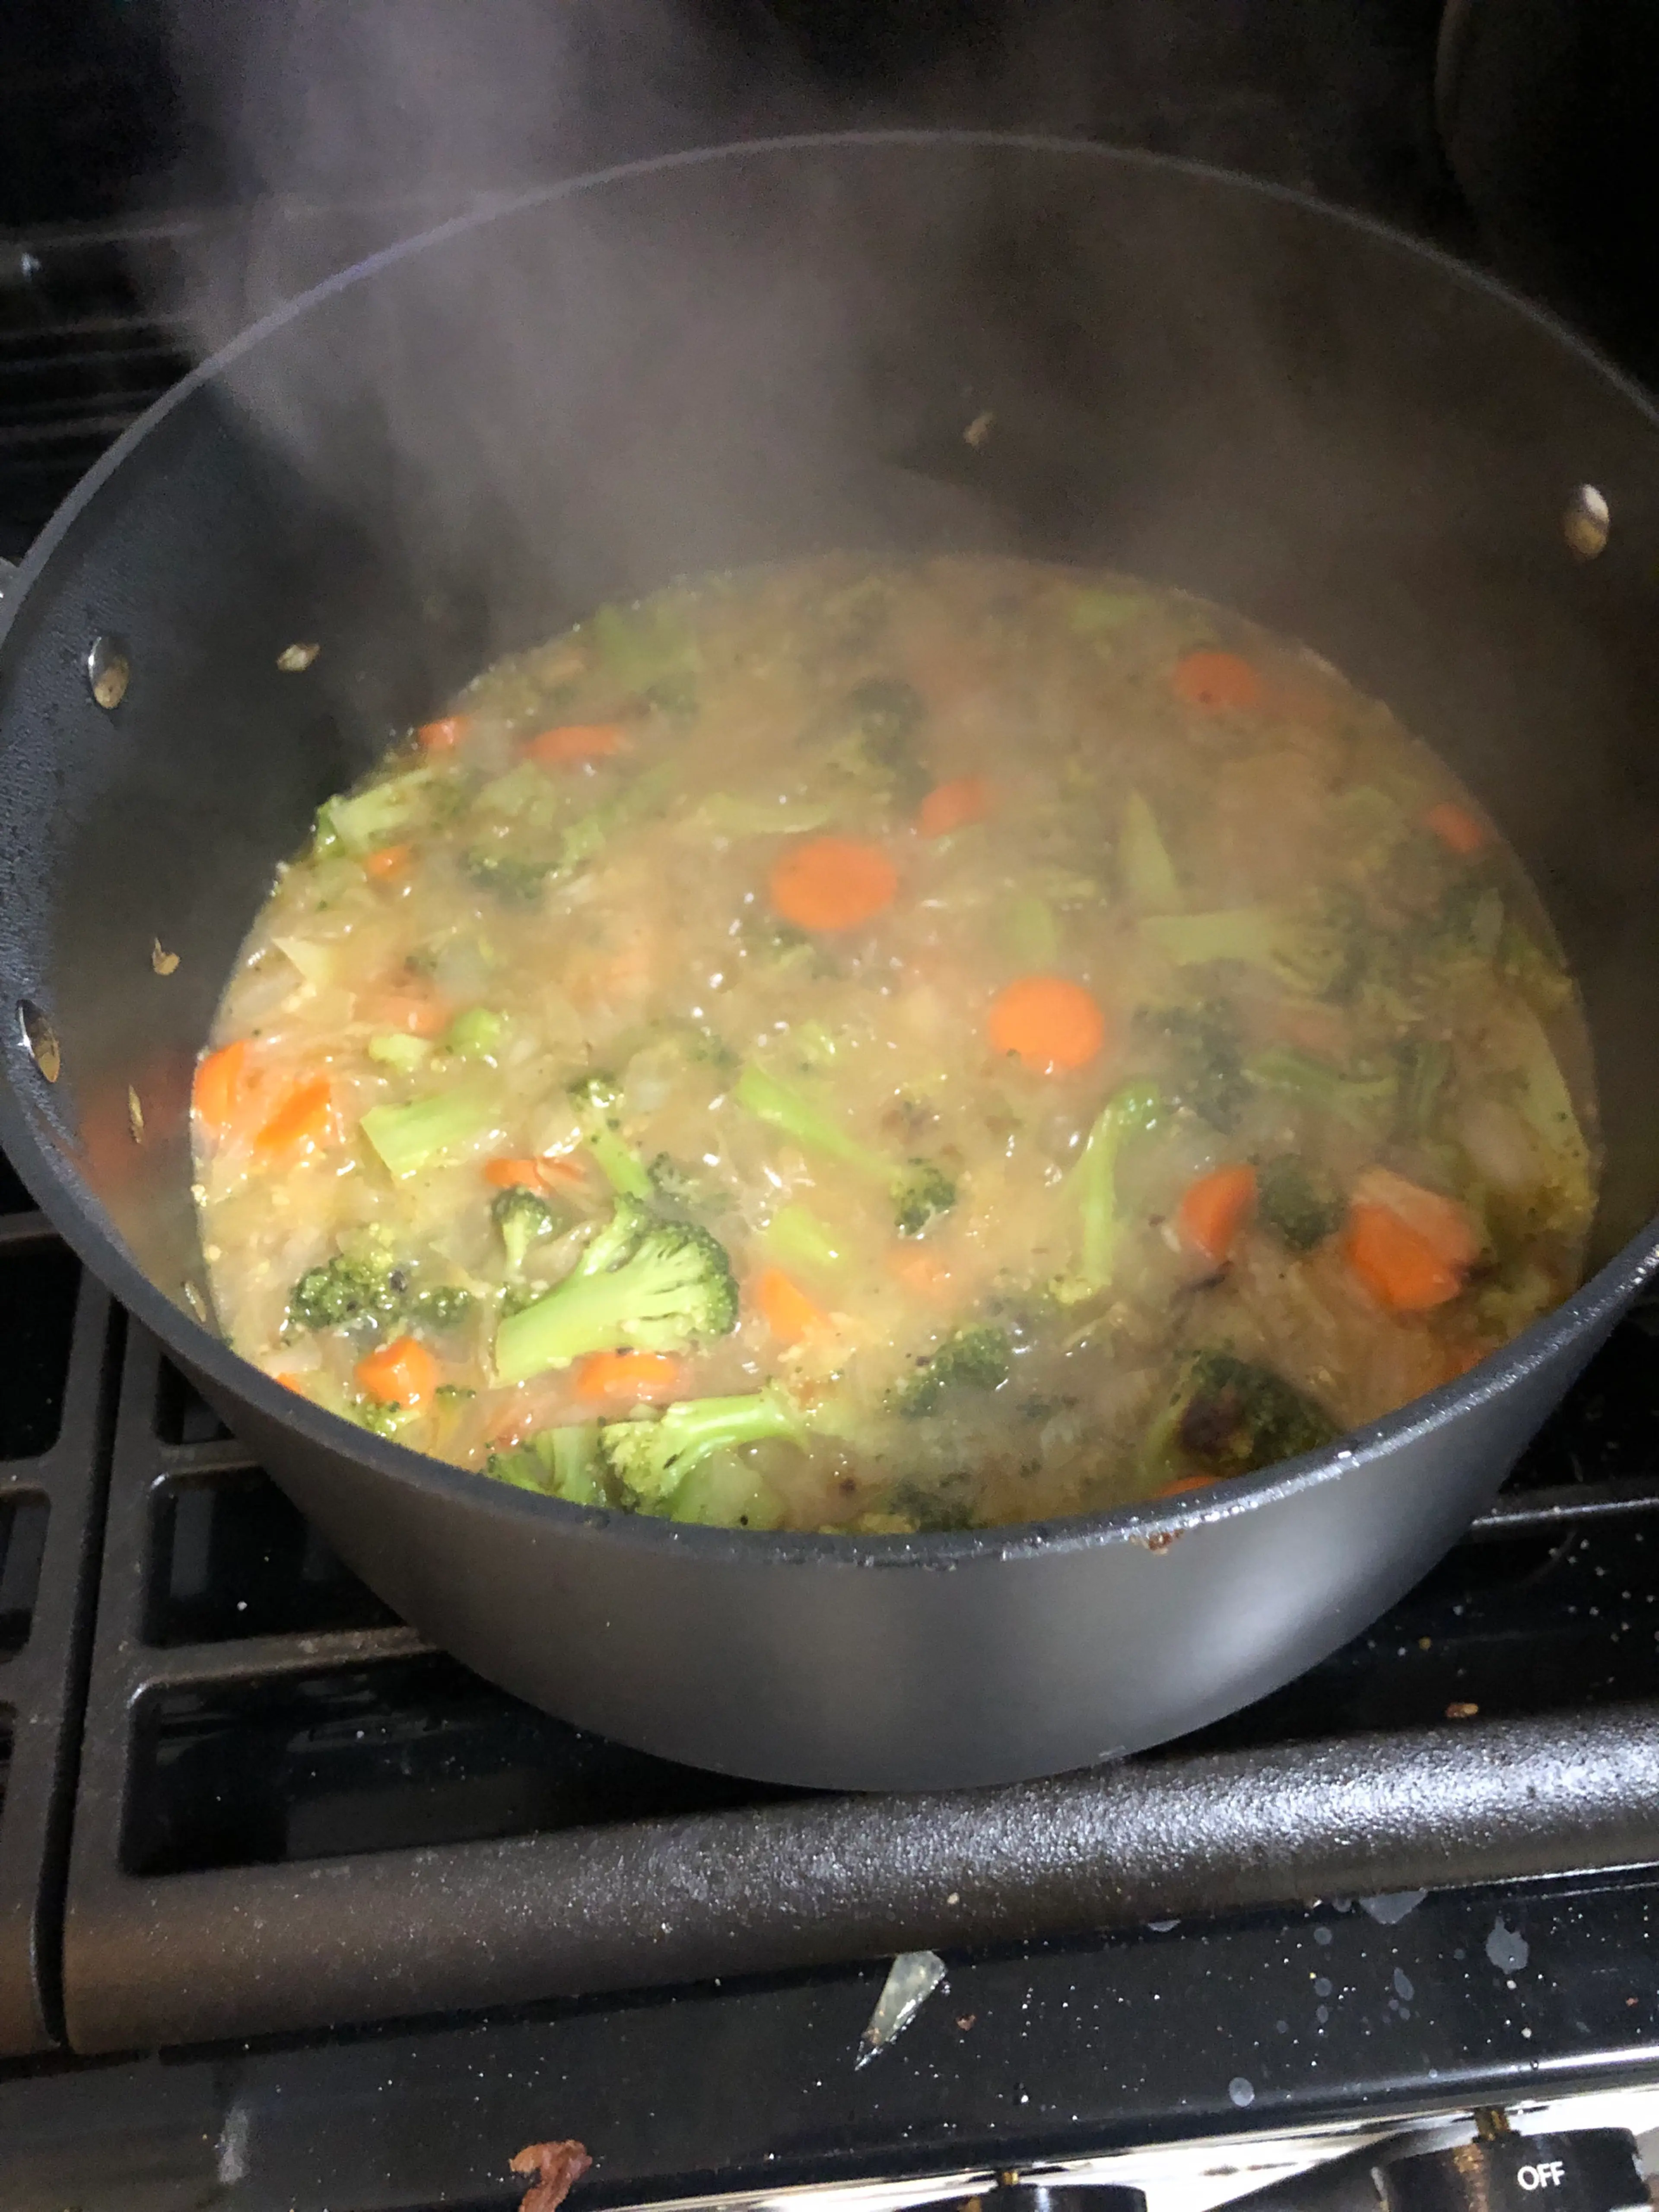 Broccoli cheddar soup